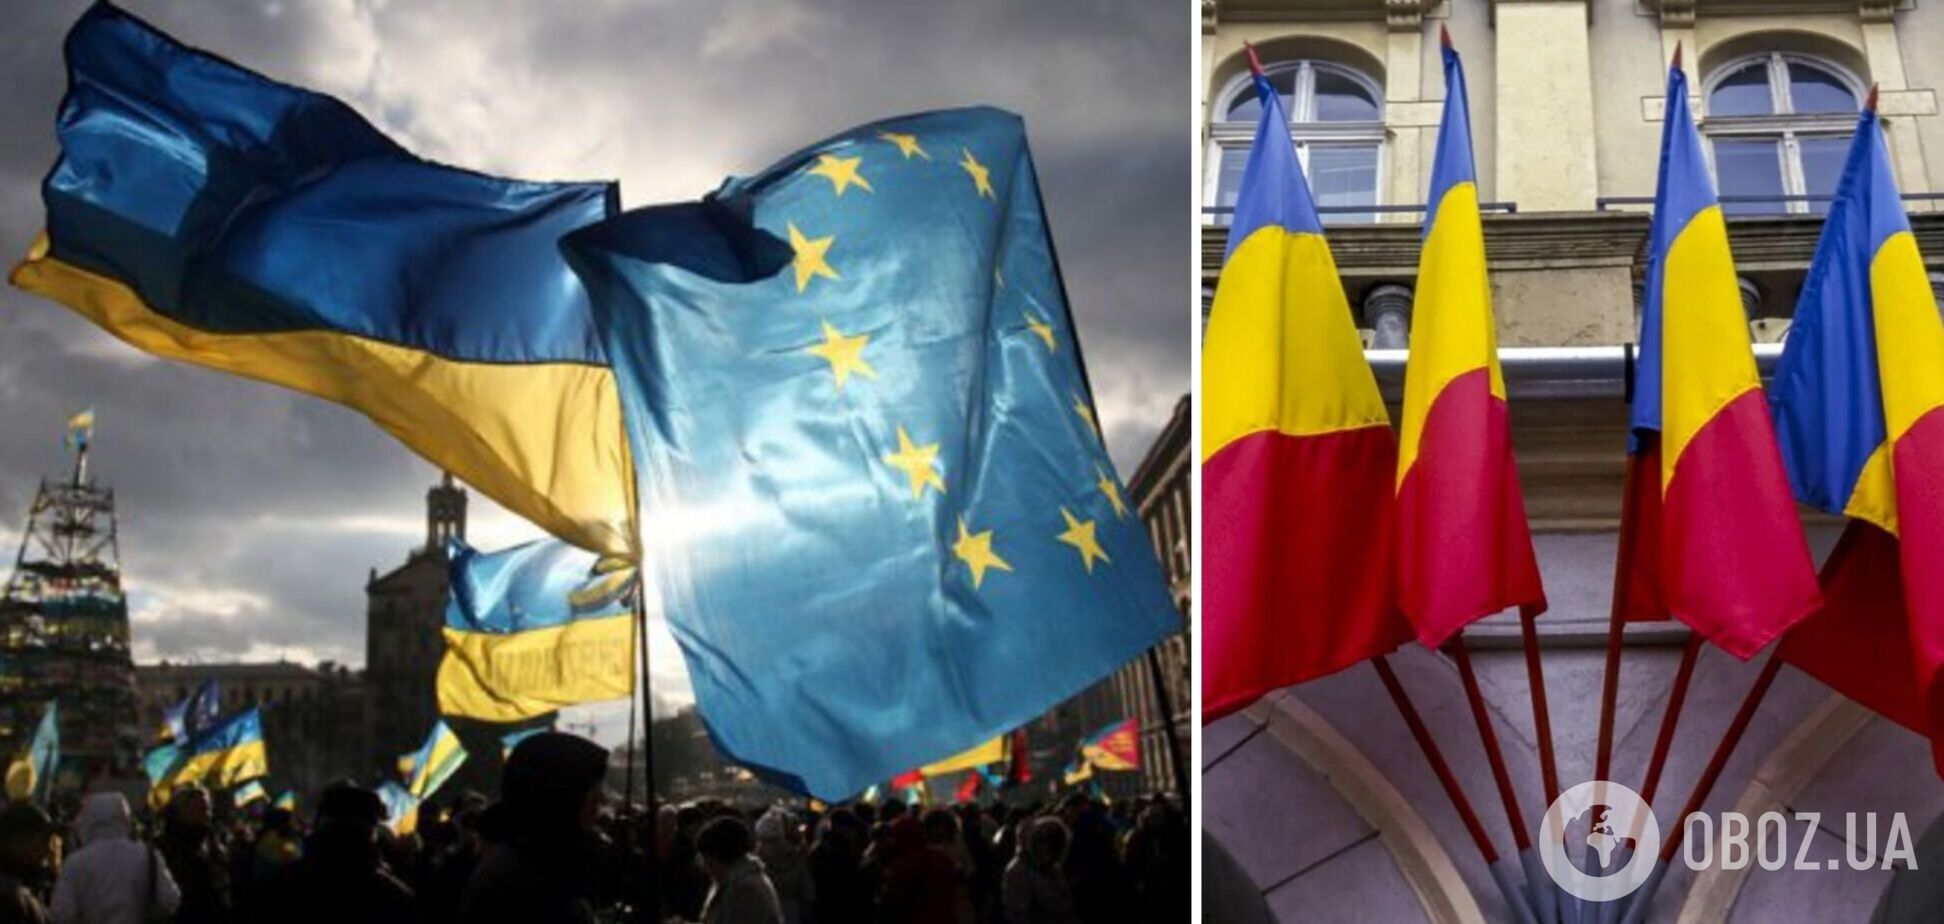 '10 лет назад украинцы отдали свой голос за Европу': Румыния поддержала начало переговоров о вступлении Украины в ЕС